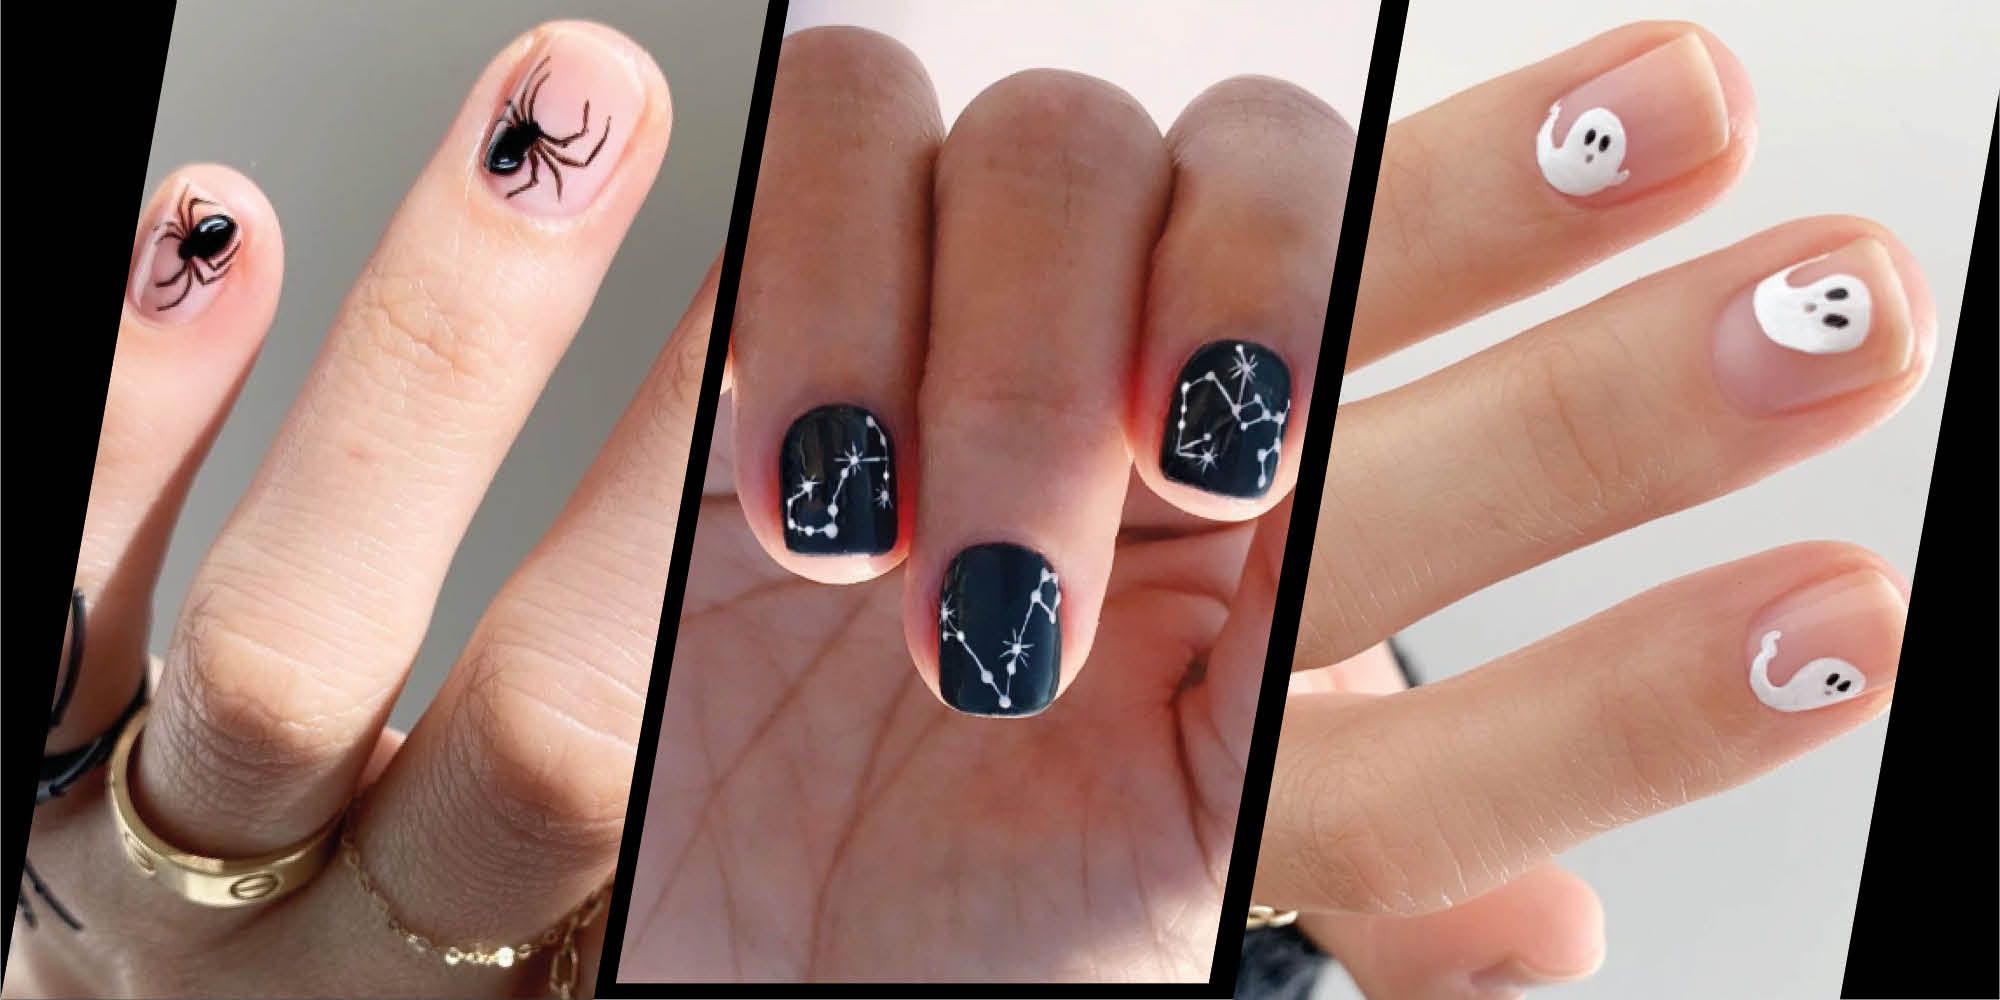 Halloween nail art trends